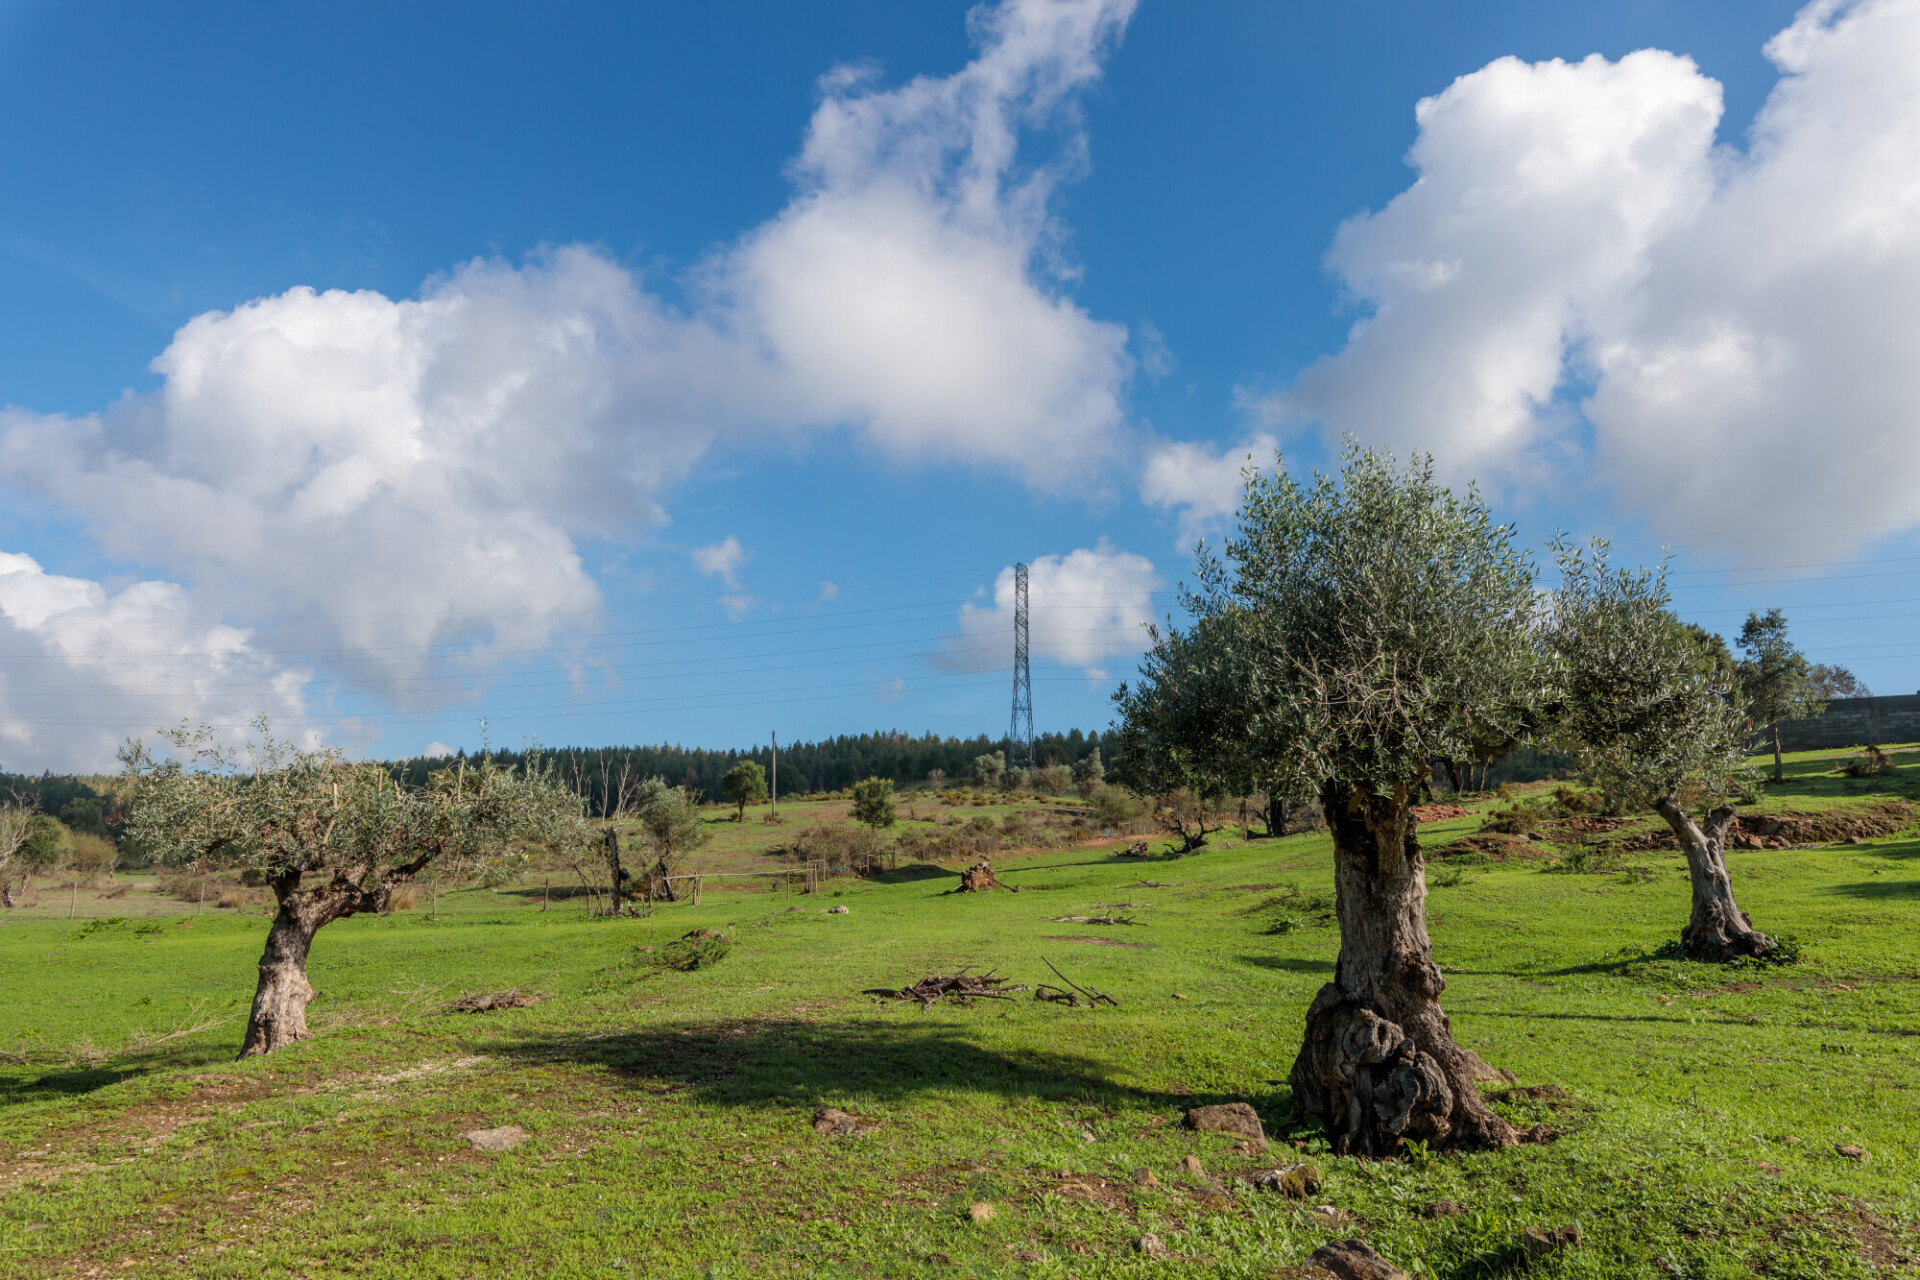 Olive trees plantation in Salento, Italy